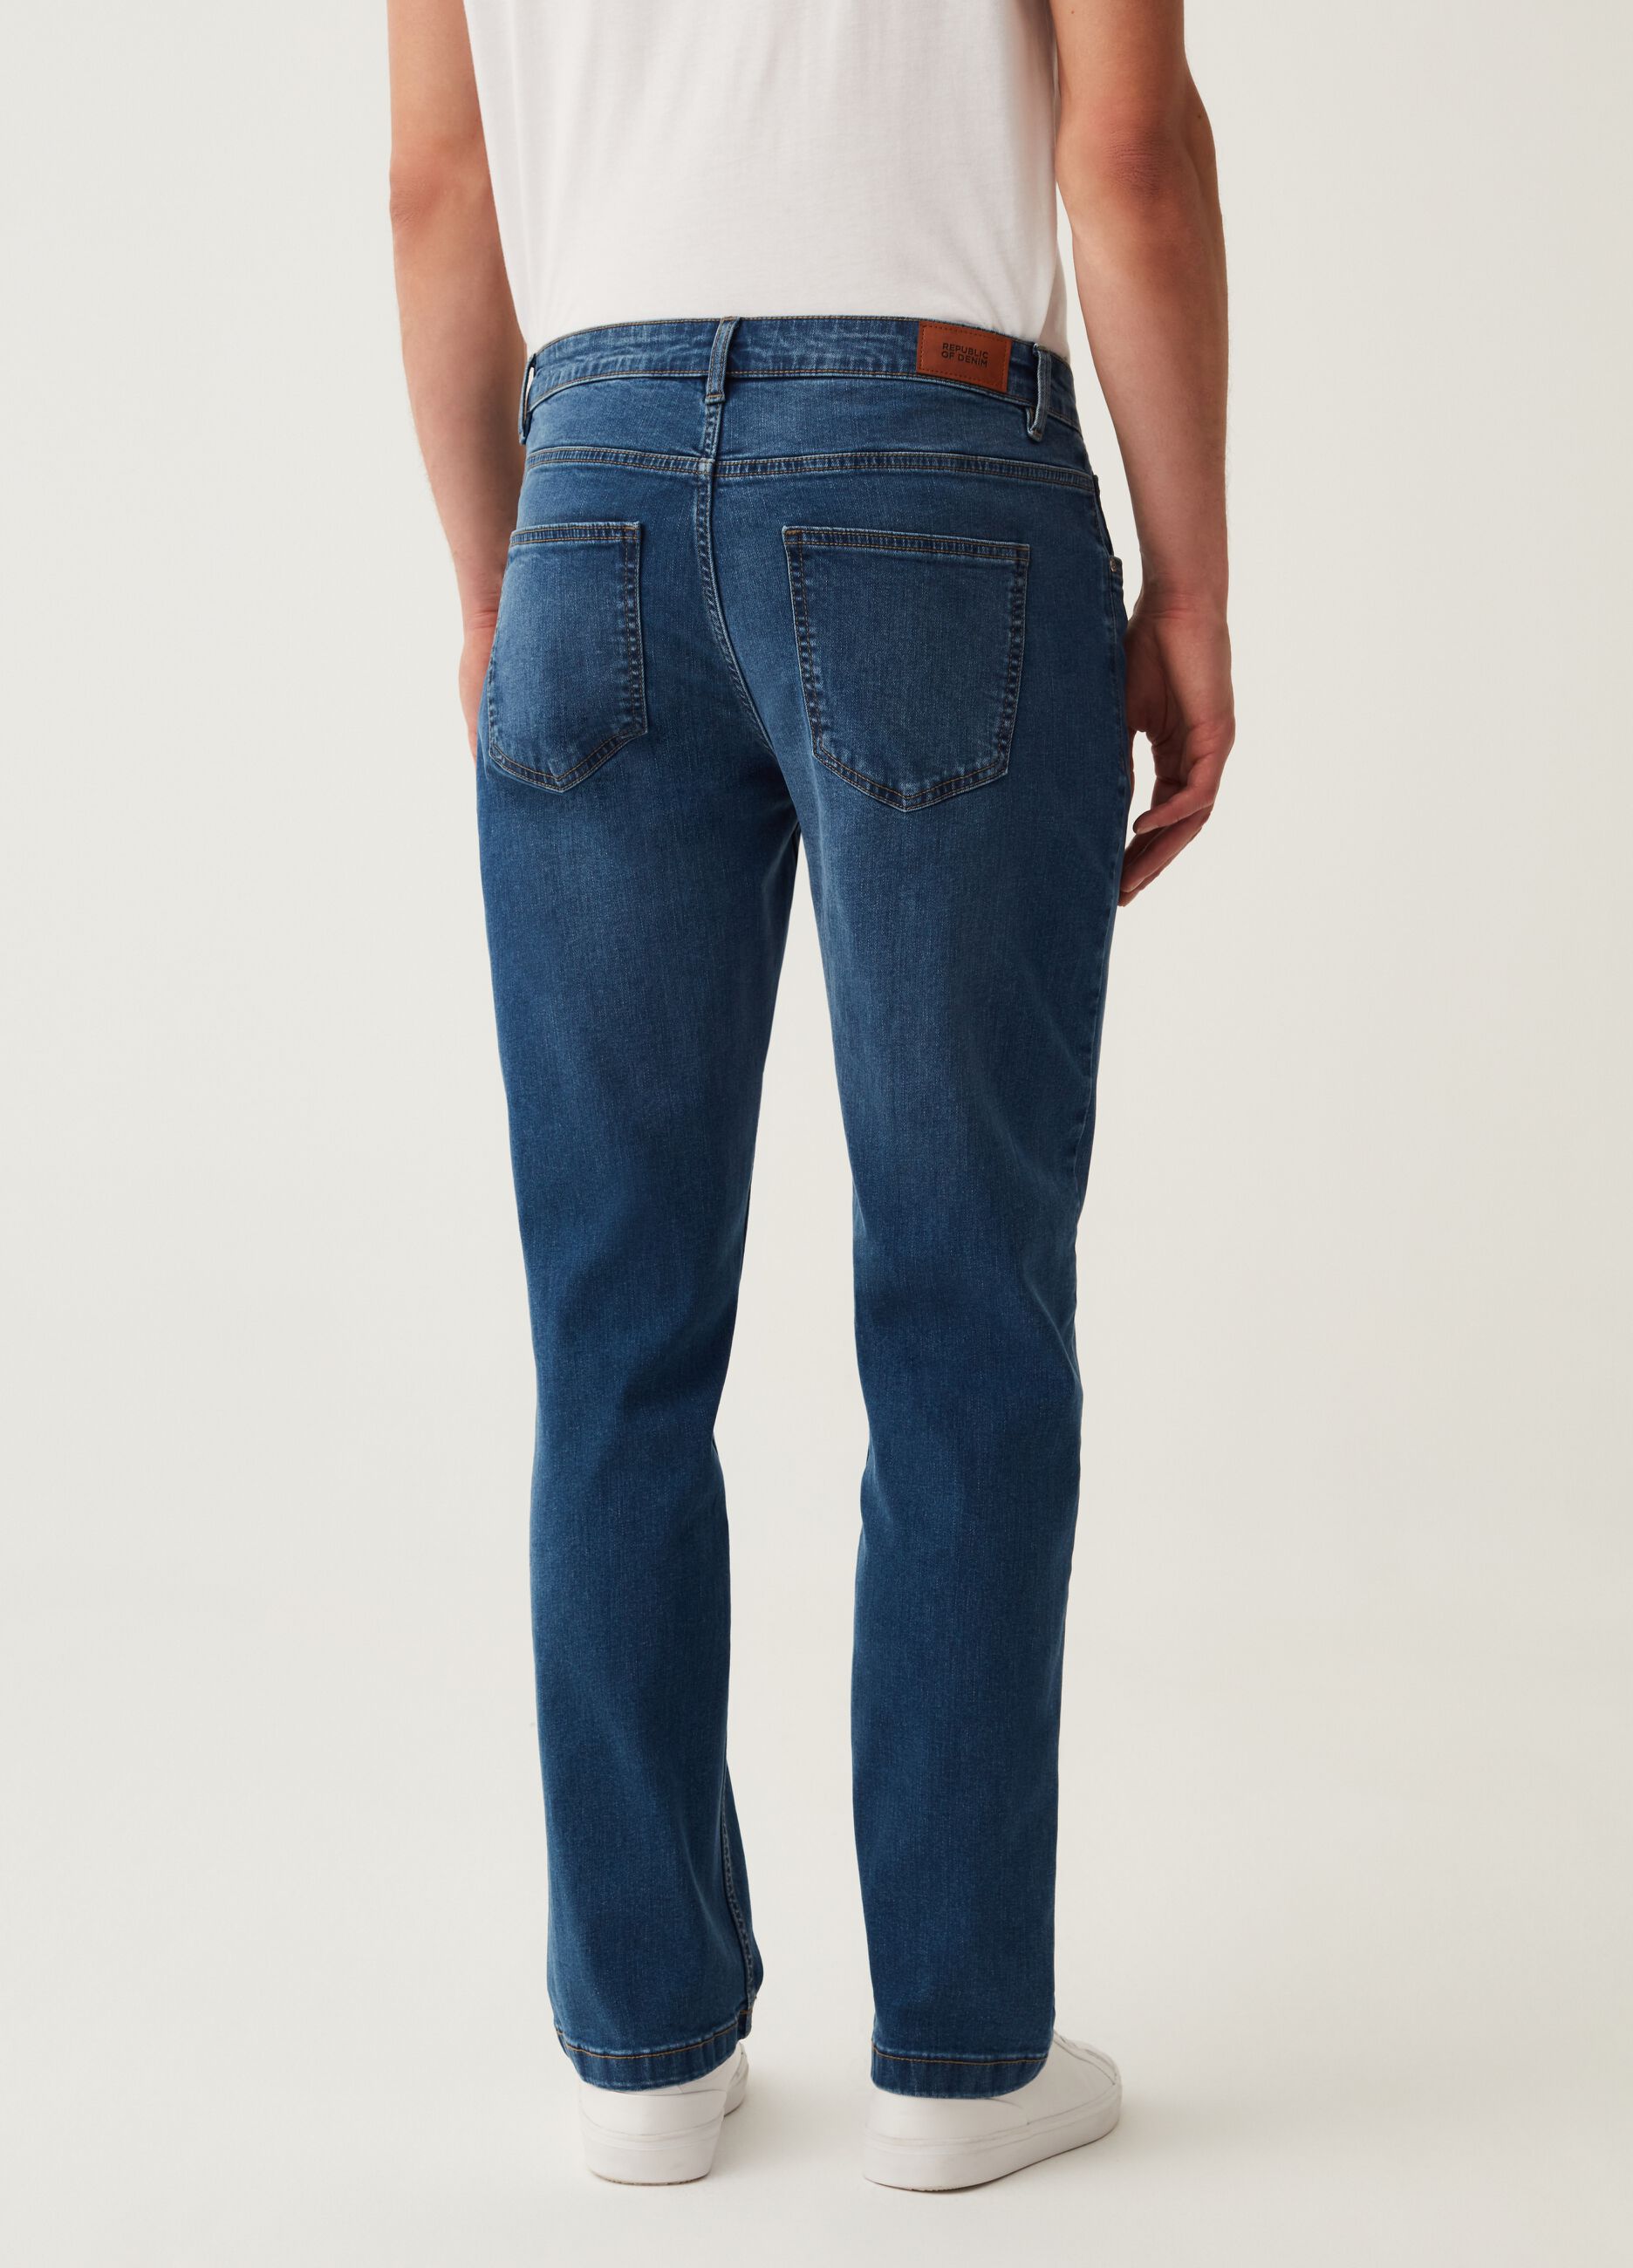 Jeans regular fit con trama cross hatch_1